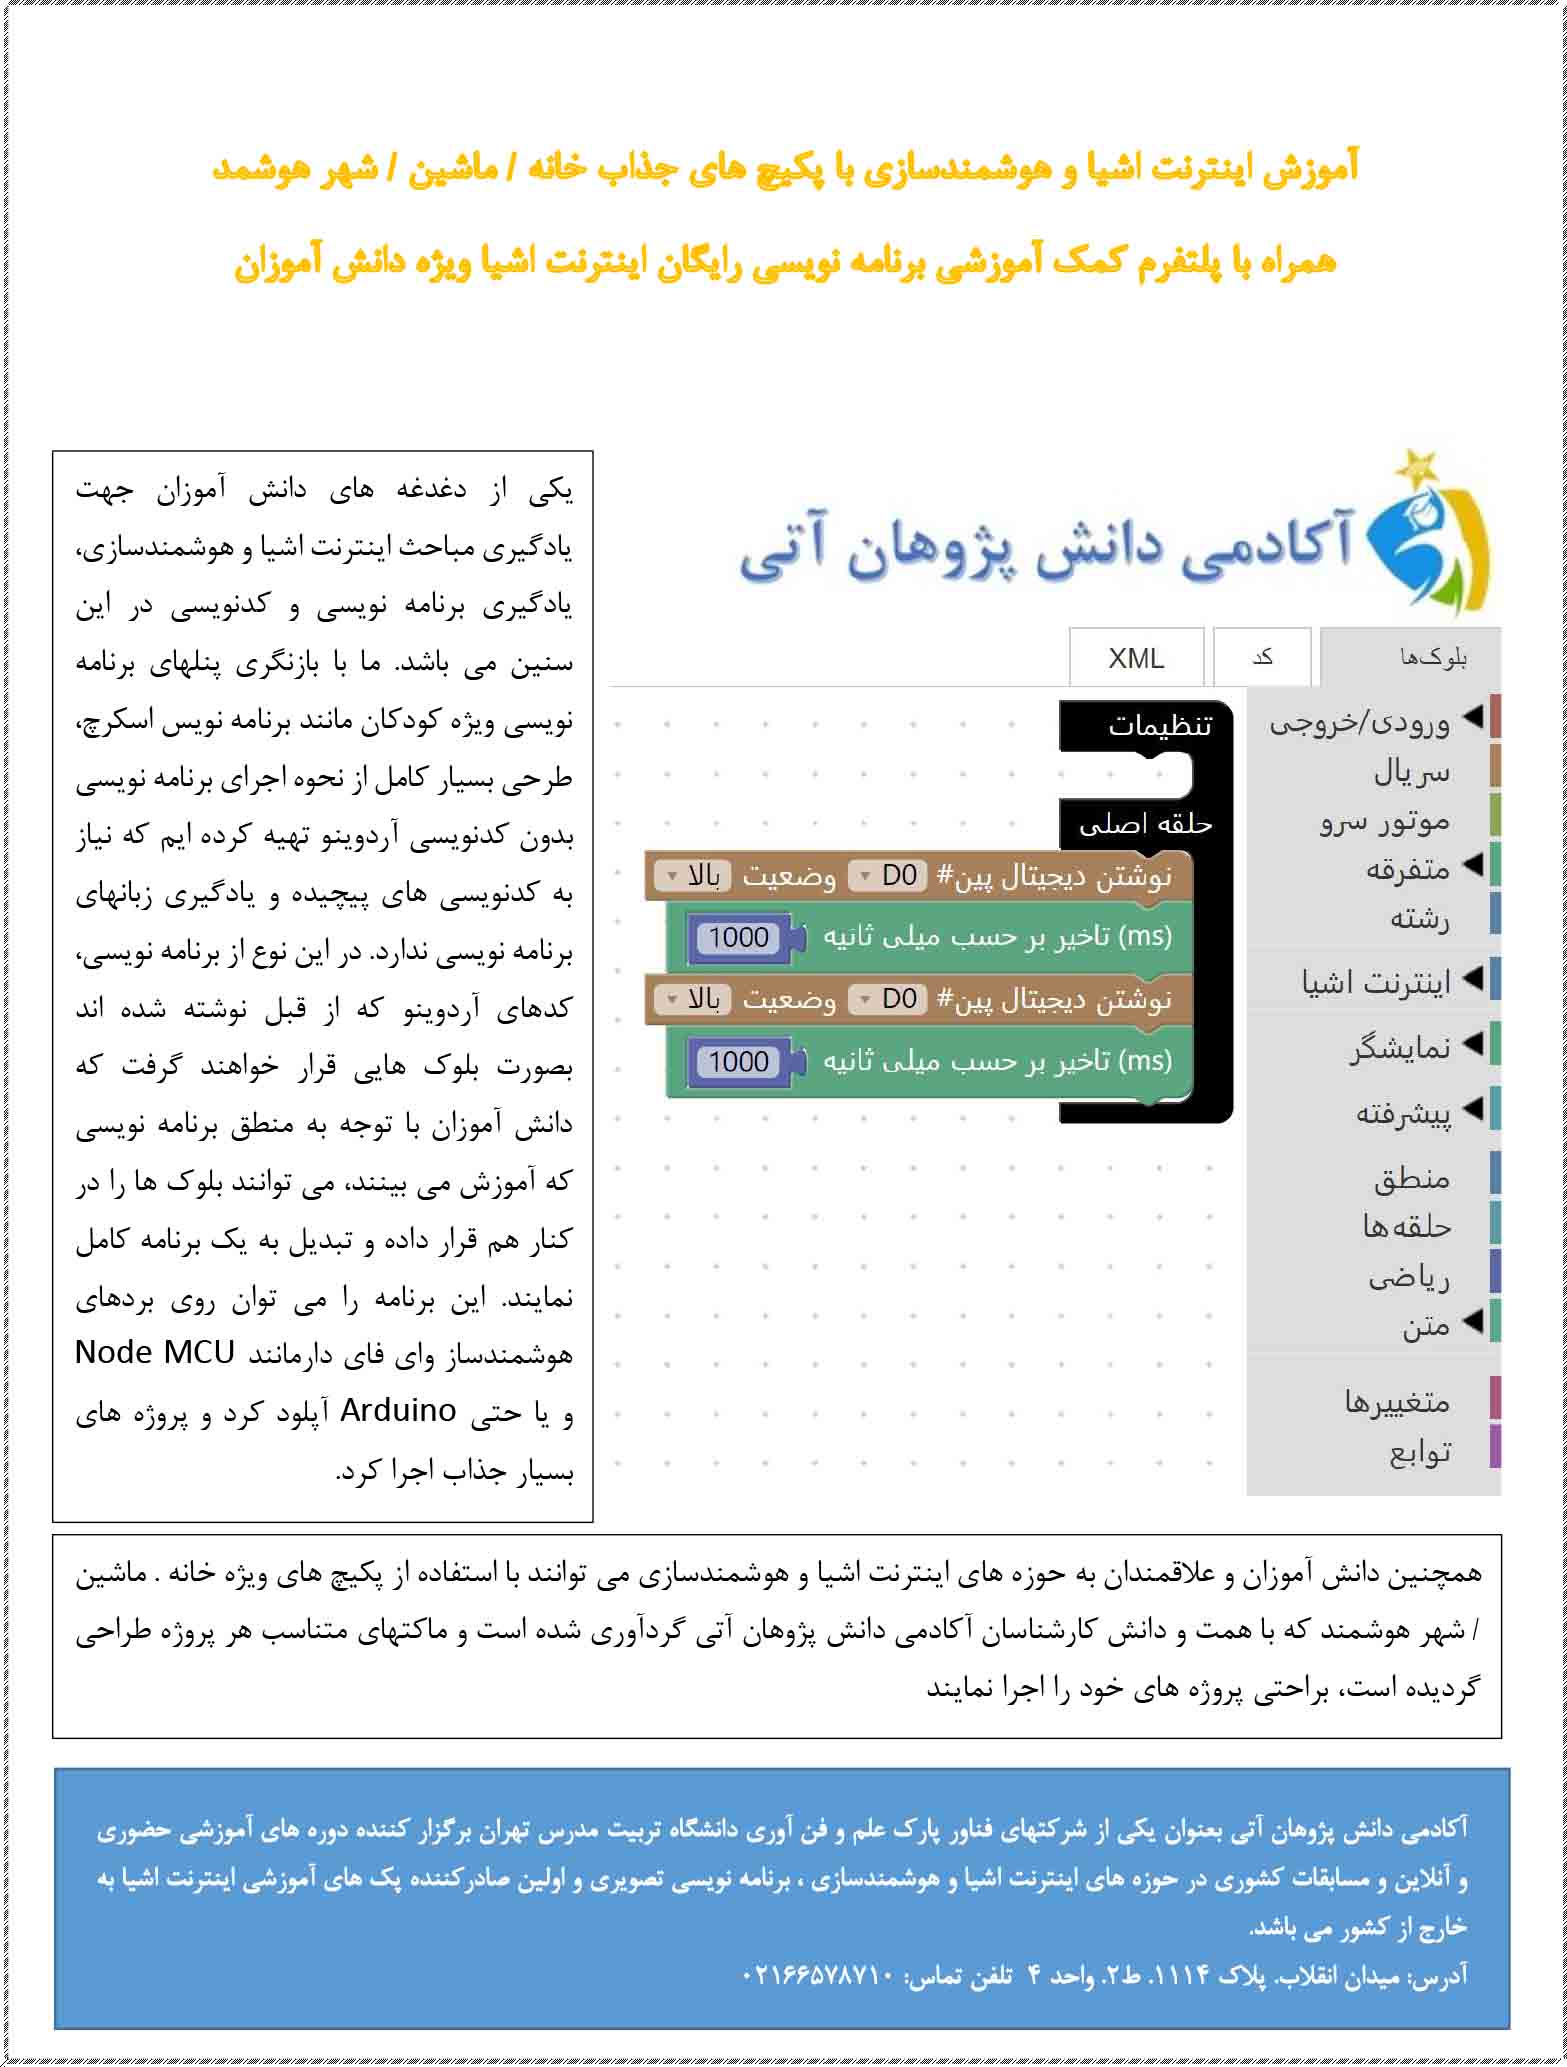 پلتفرم بومي و ايراني آموزشي اينترنت اشيا و هوشمندسازي